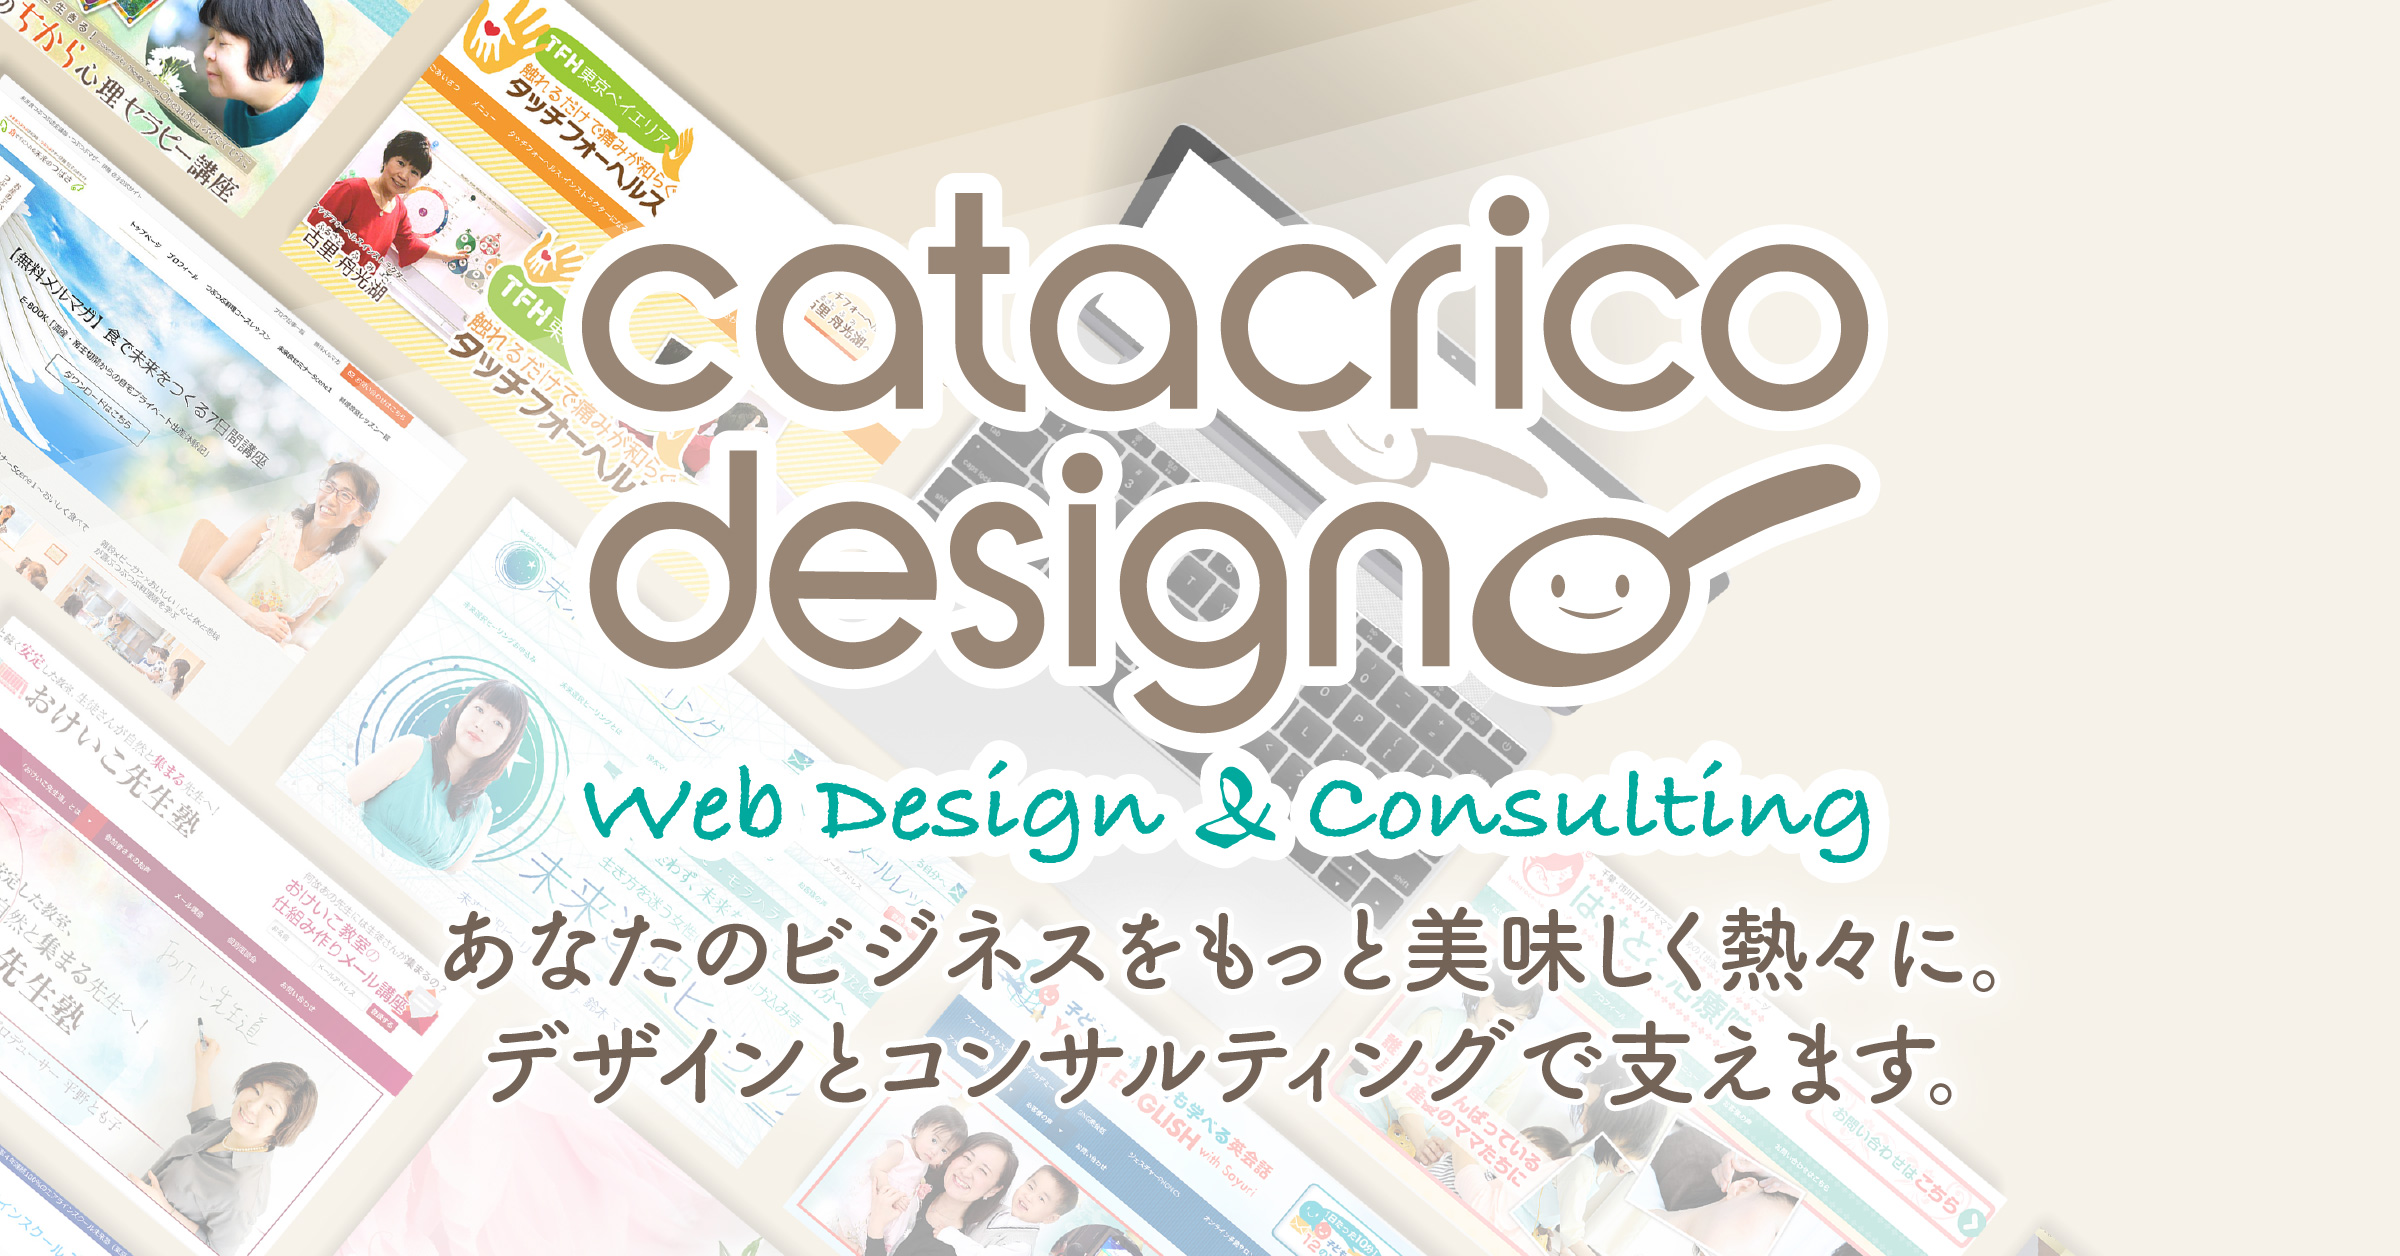 ロゴ 印刷物デザイン Catacrico Design カタクリコデザイン 東京 新宿 立川のホームページ制作 コンサルティング事務所